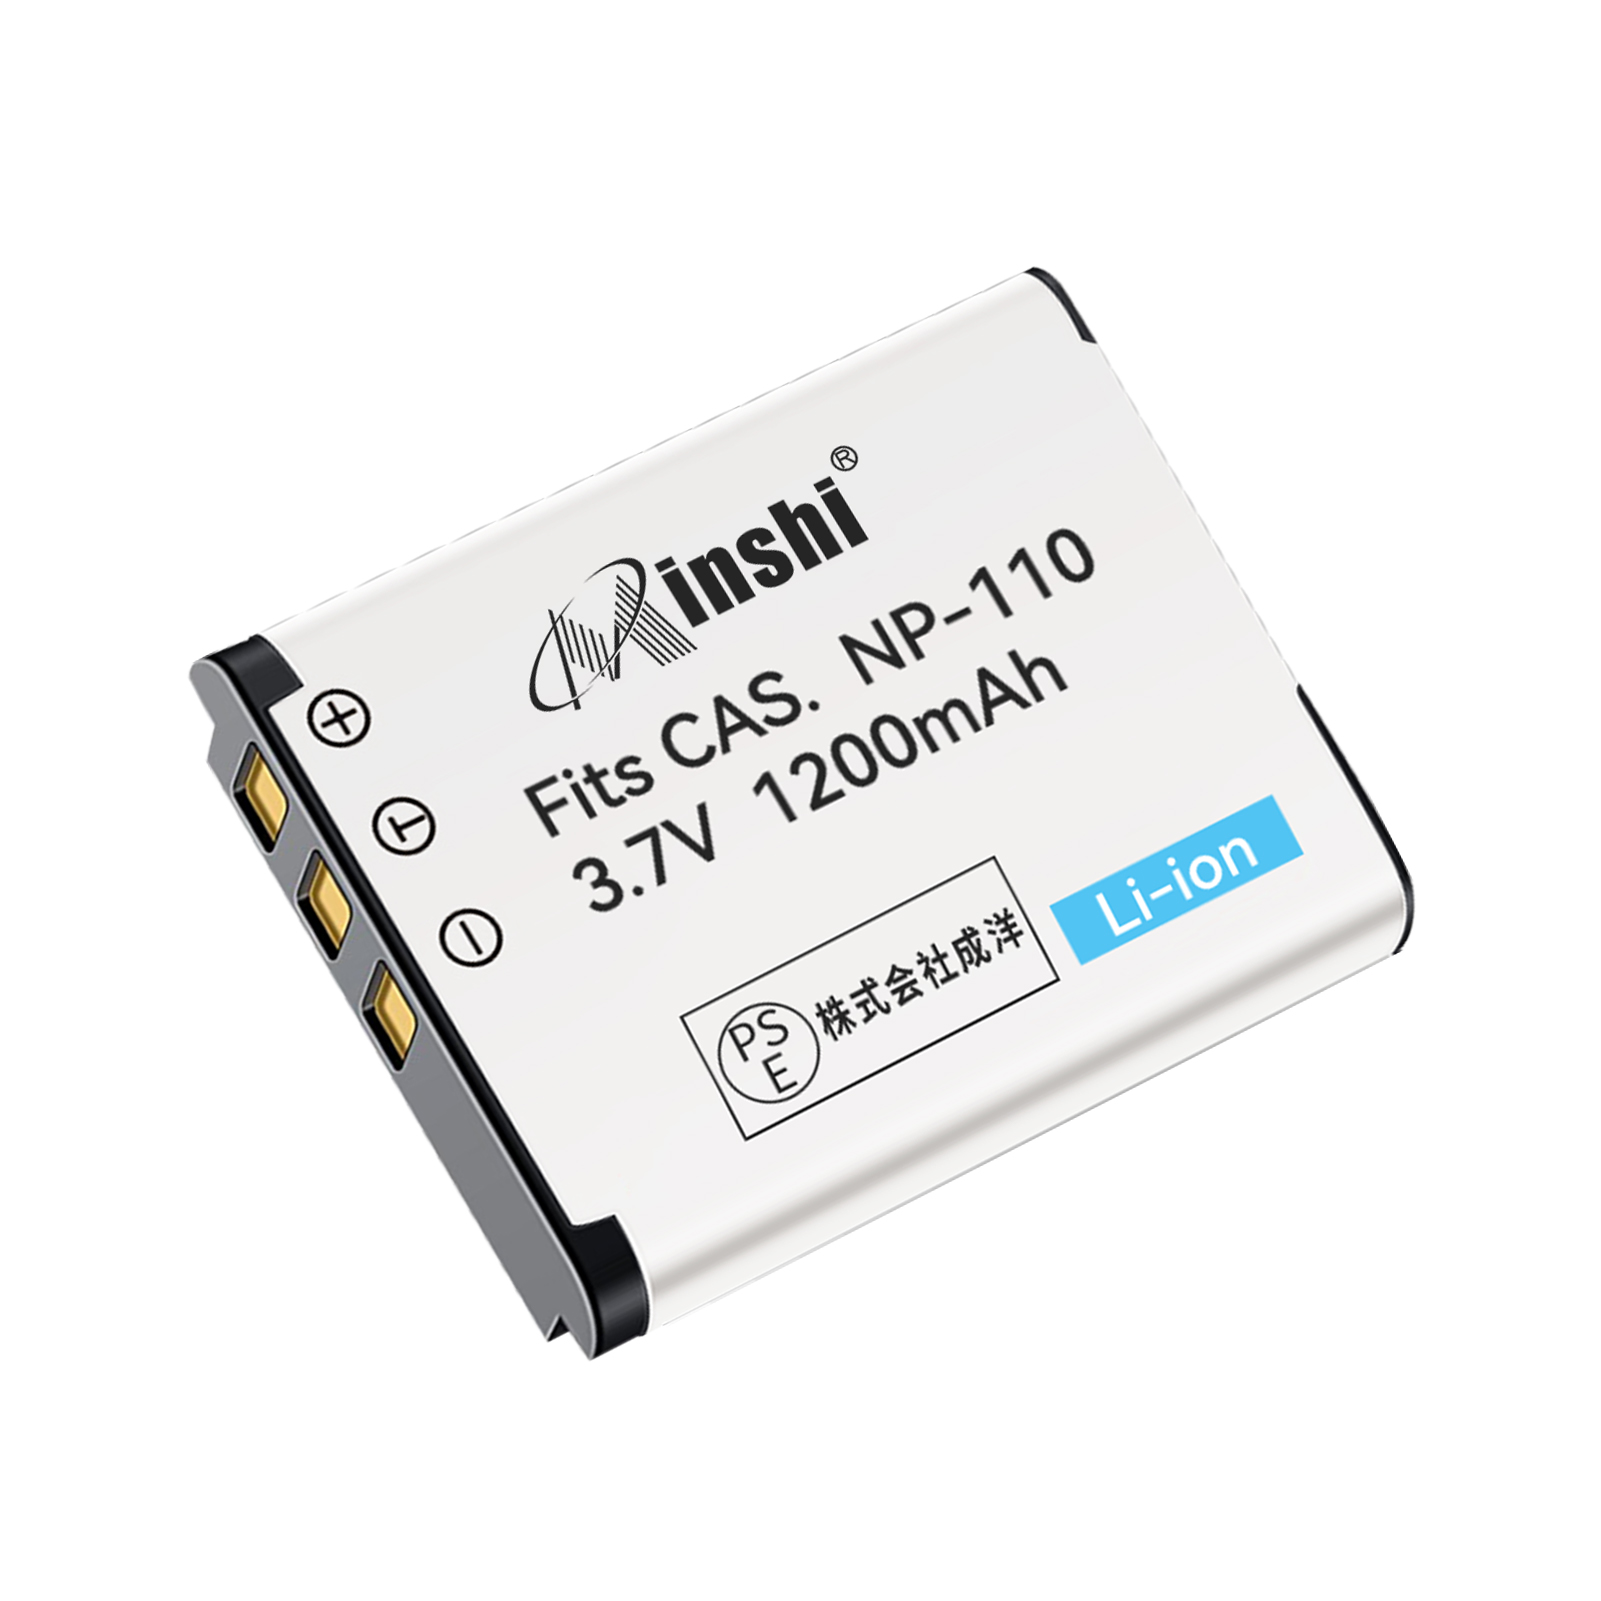 【1年保証】minshi CASIO NP-110 NP-160【1200mAh 3.7V】PSE認定済 高品質BN-VG212U NP-160交換用バッテリー